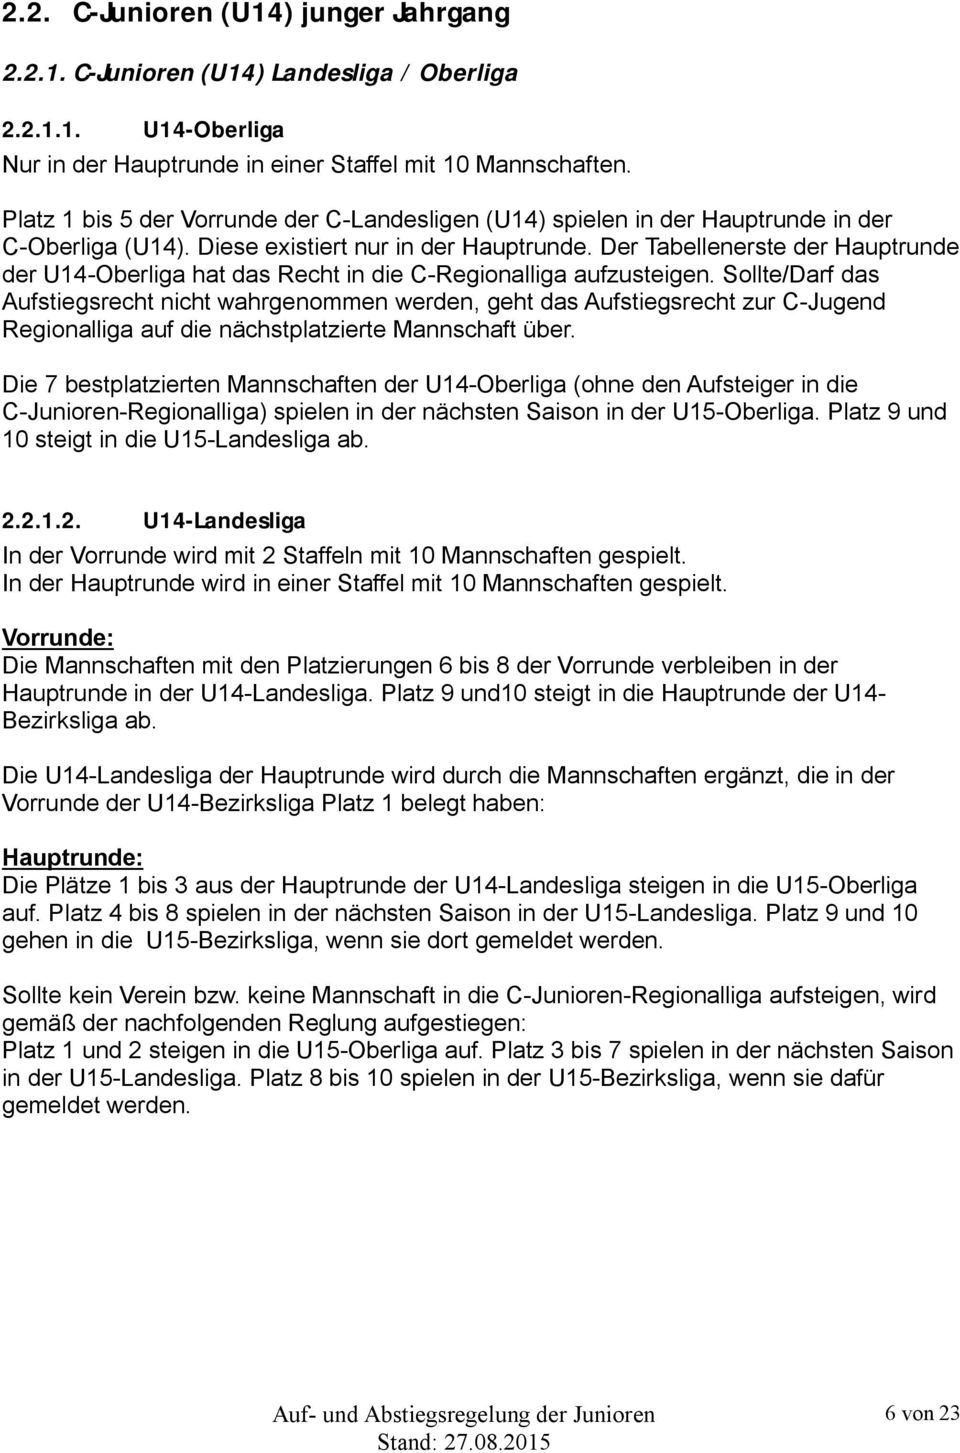 Der Tabellenerste der Hauptrunde der U14-Oberliga hat das Recht in die C-Regionalliga aufzusteigen.